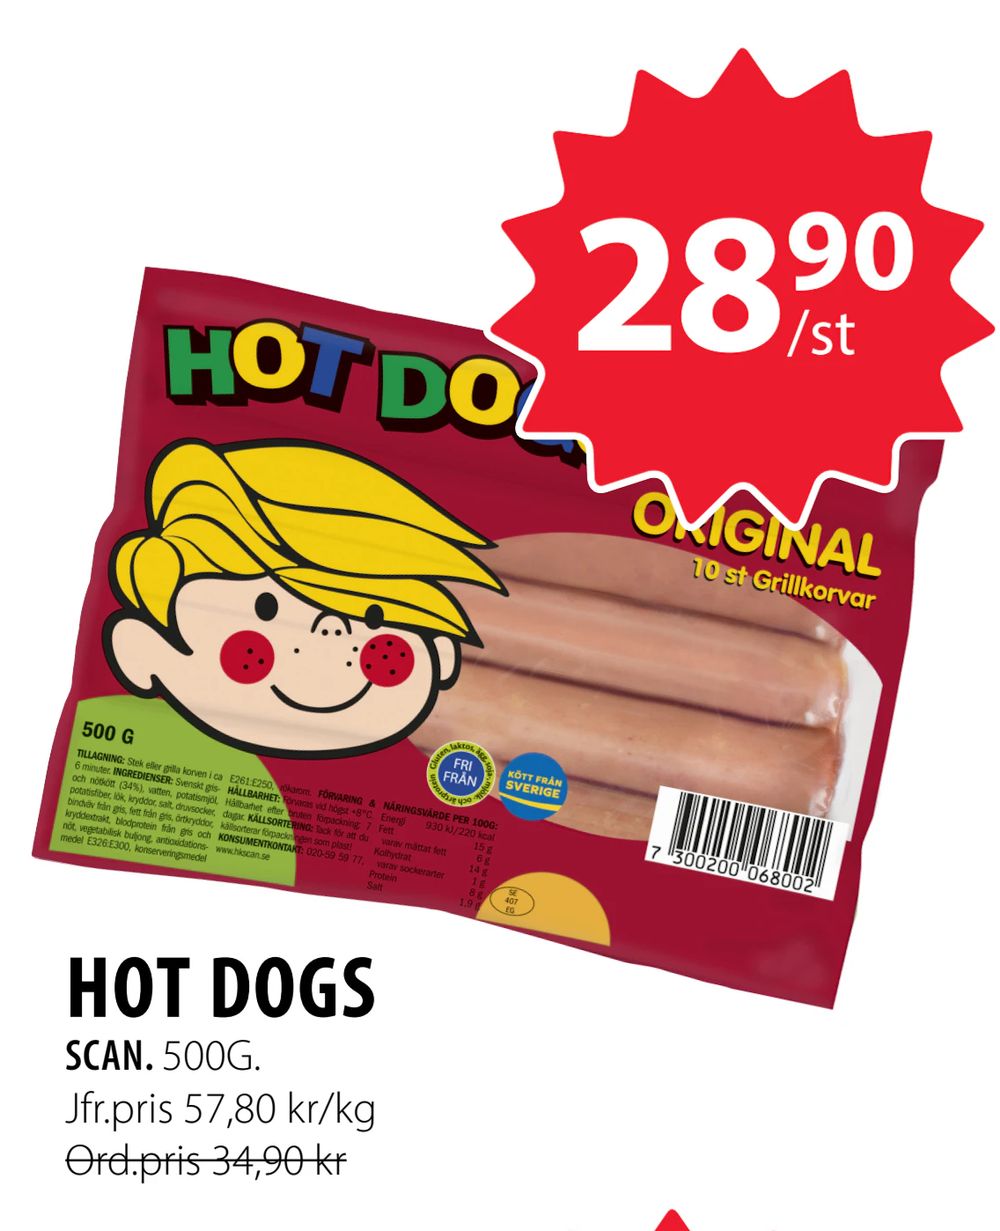 Erbjudanden på HOT DOGS från Handlar’n för 28,90 kr